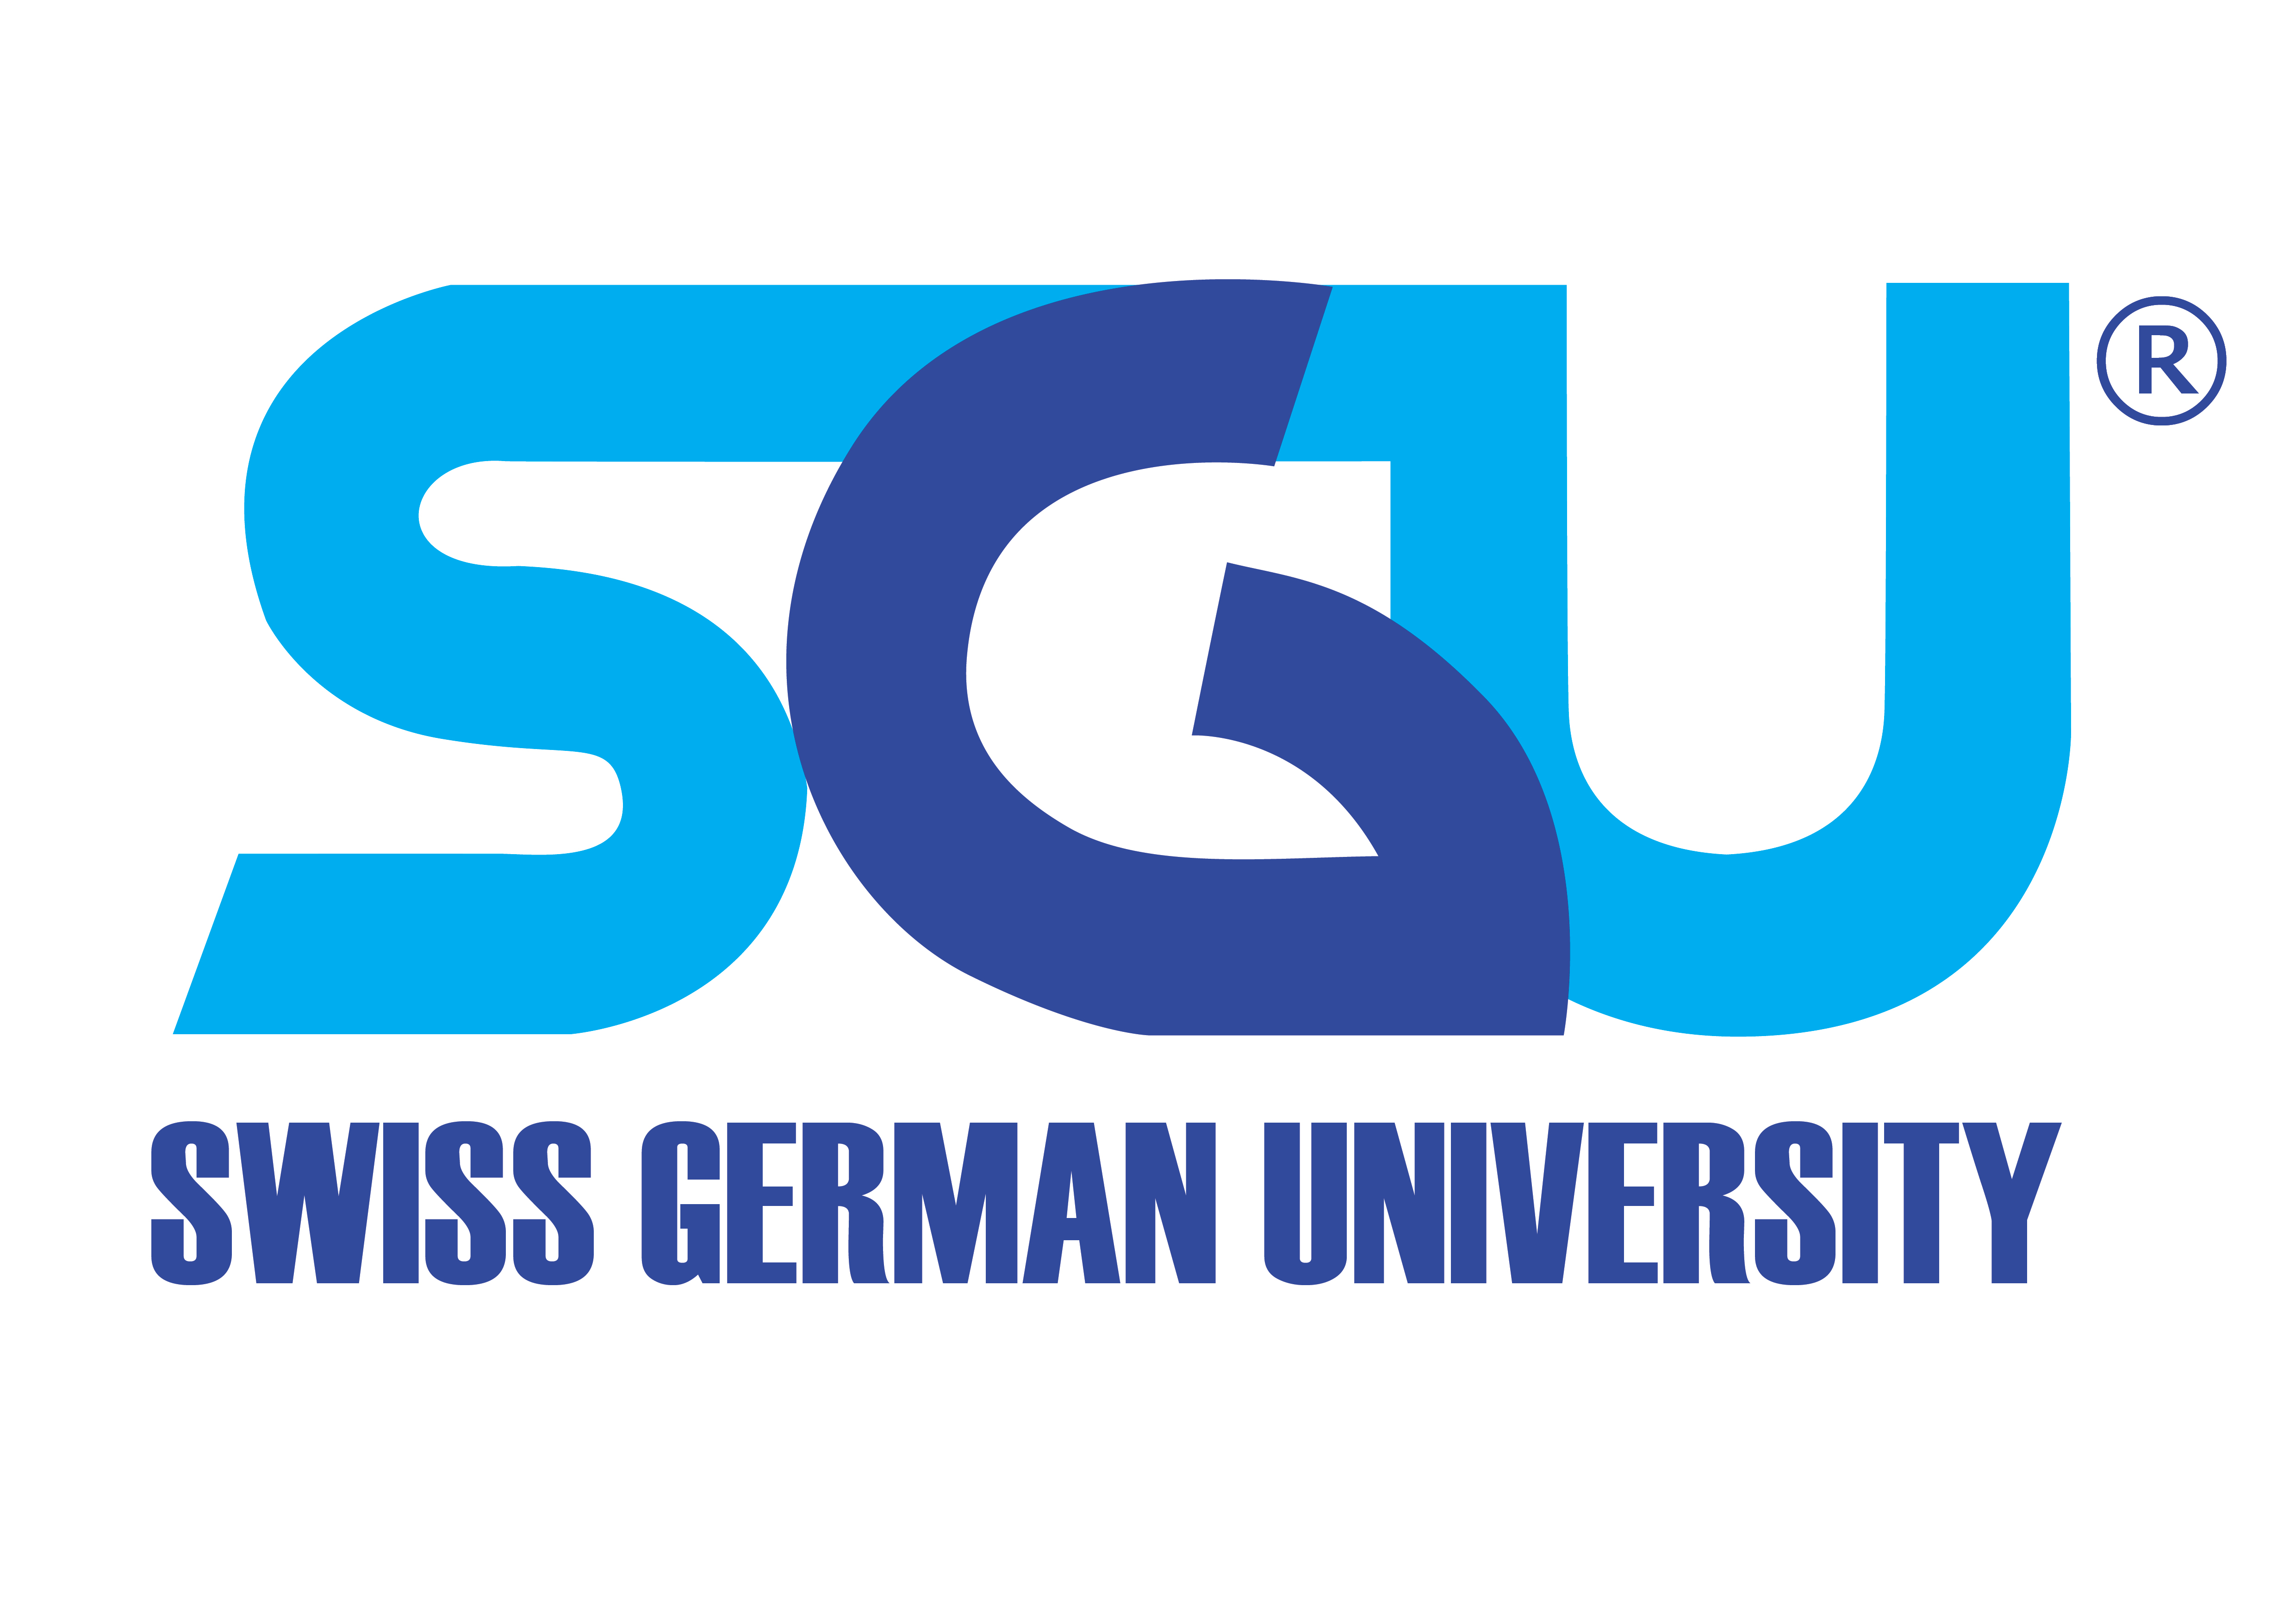 Swiss German University - Wikipedia